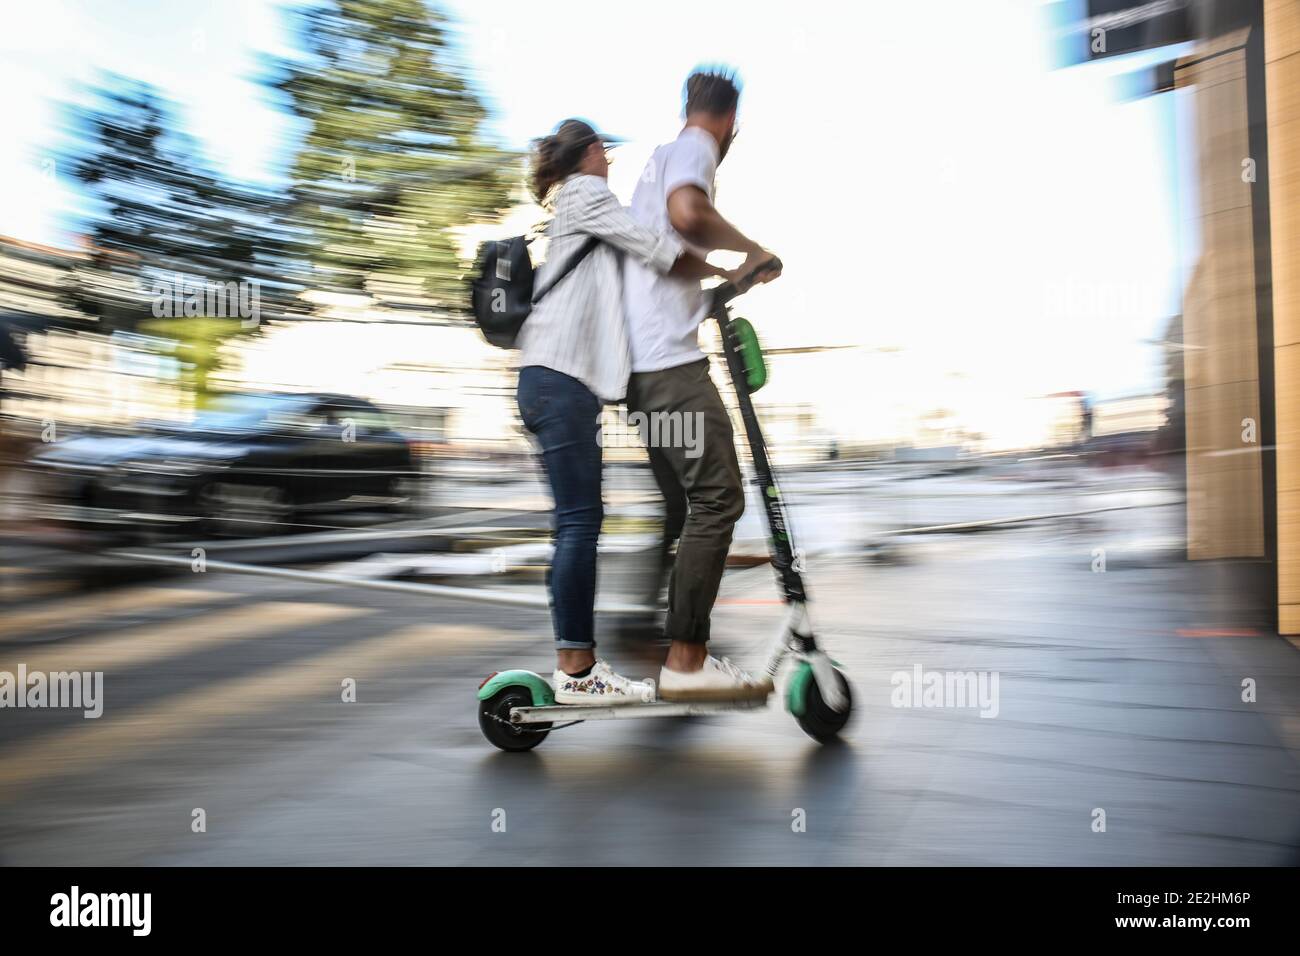 Zwei Personen, die einen Elektroroller auf einem Bürgersteig, ohne Helm, in  Lyon (Zentral-Ost-Frankreich) fahren Stockfotografie - Alamy